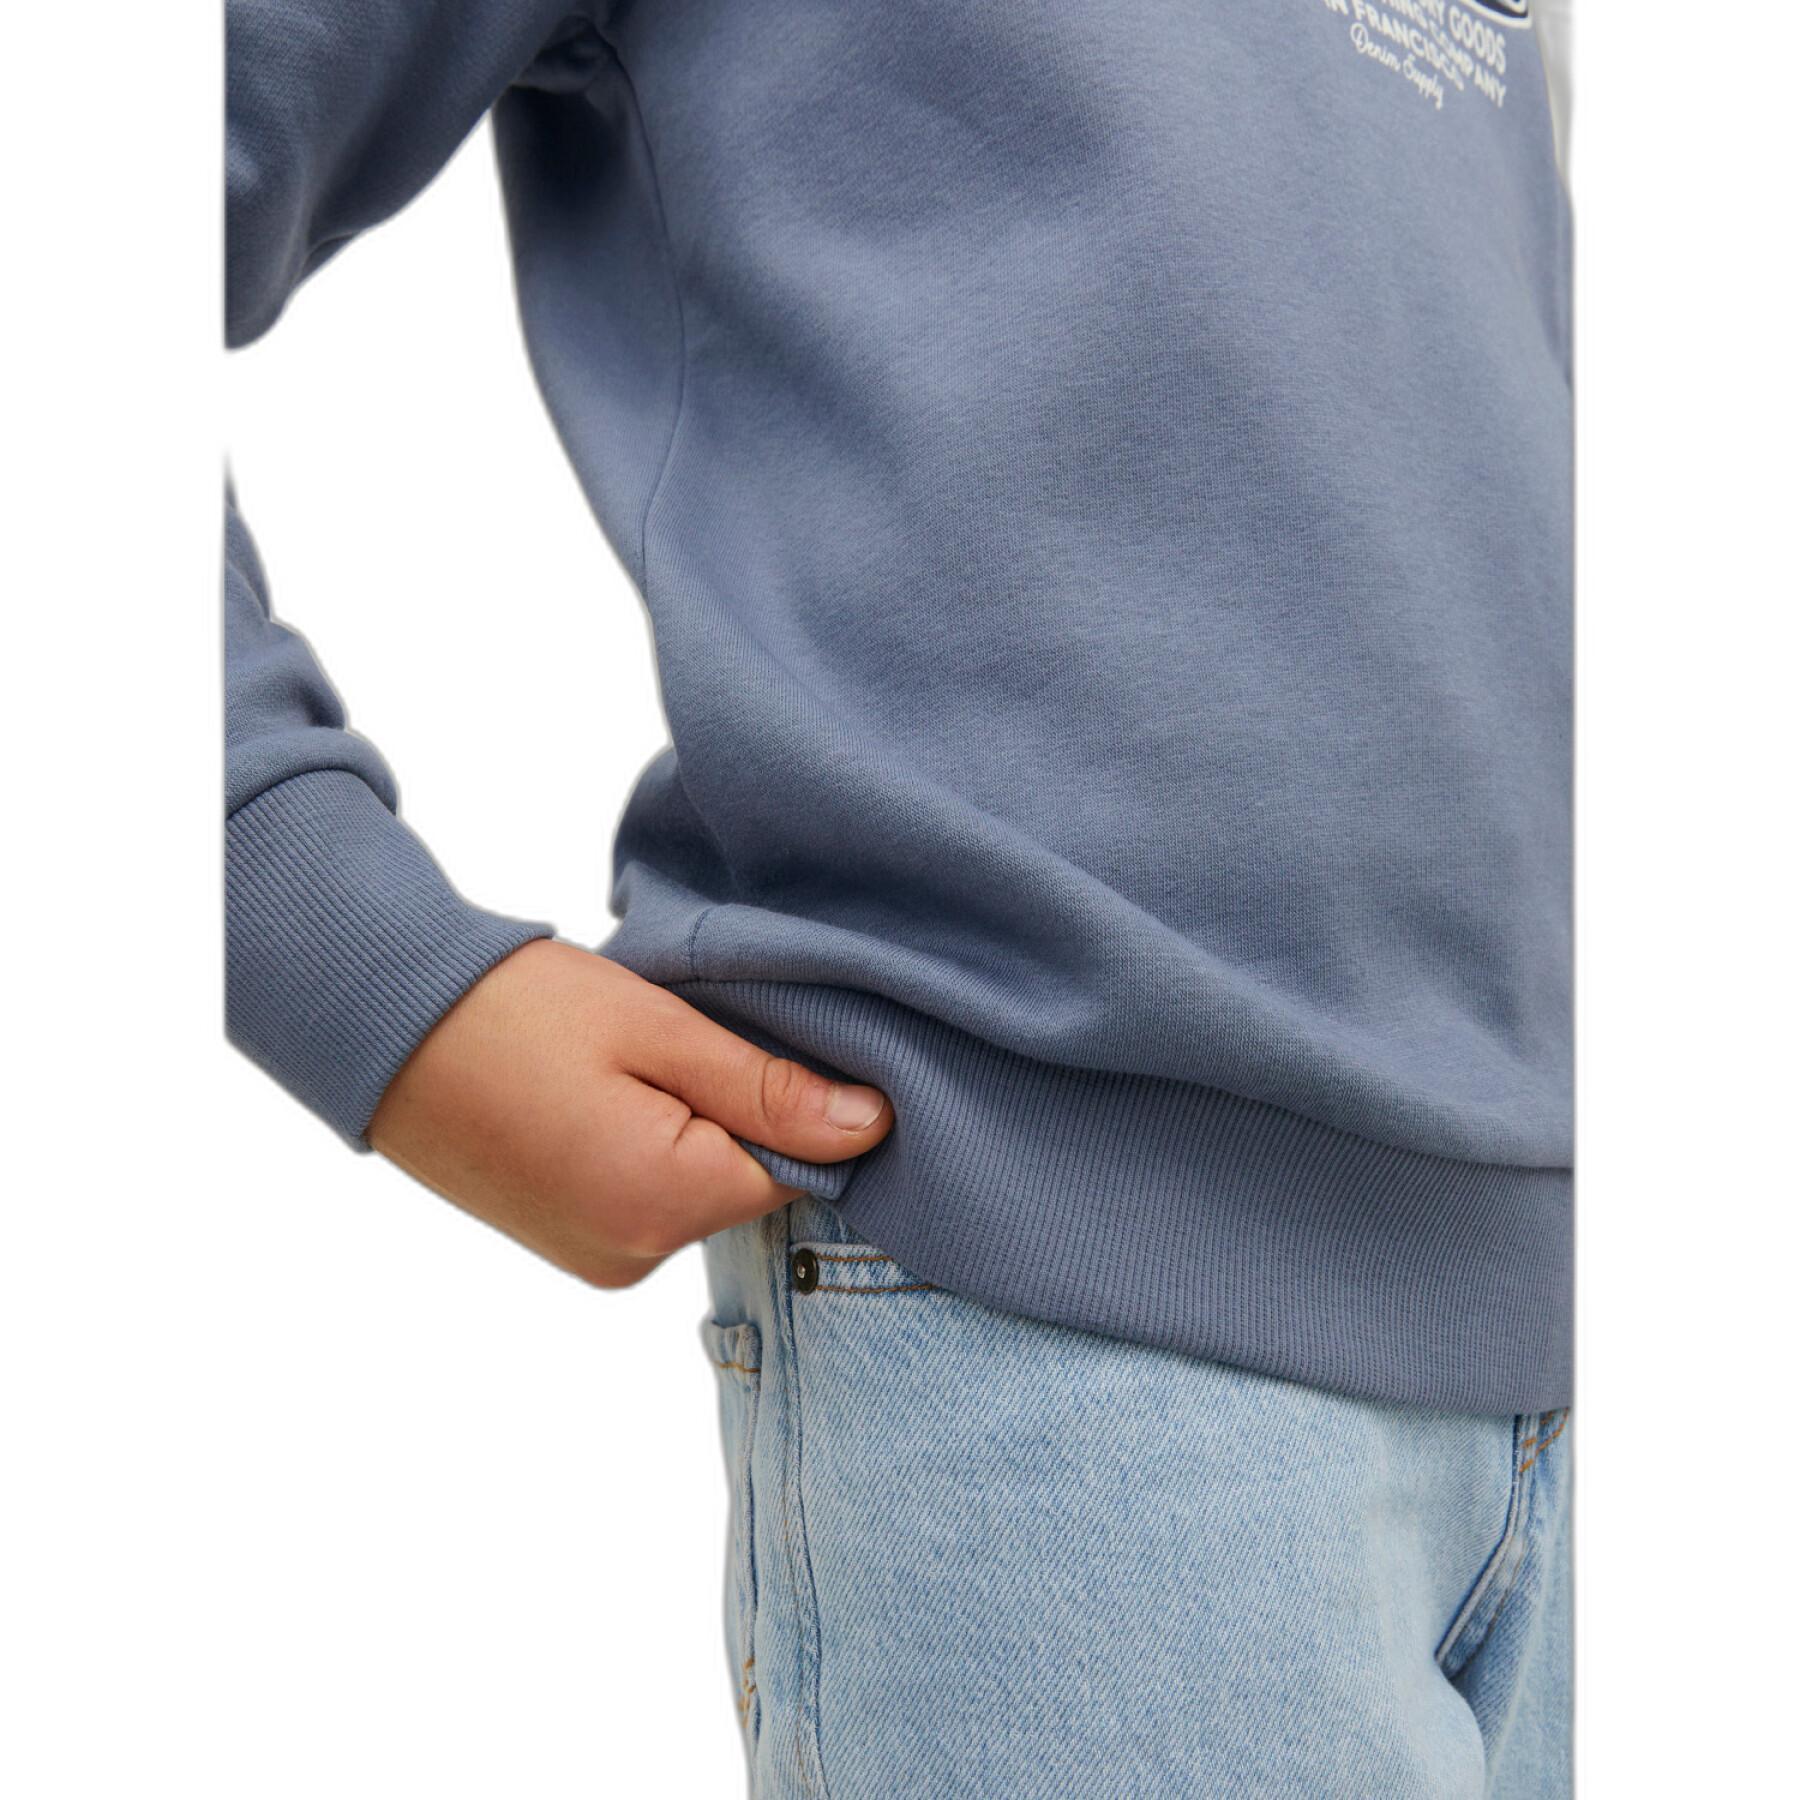 Sweatshirt hooded child Jack & Jones Logo 2